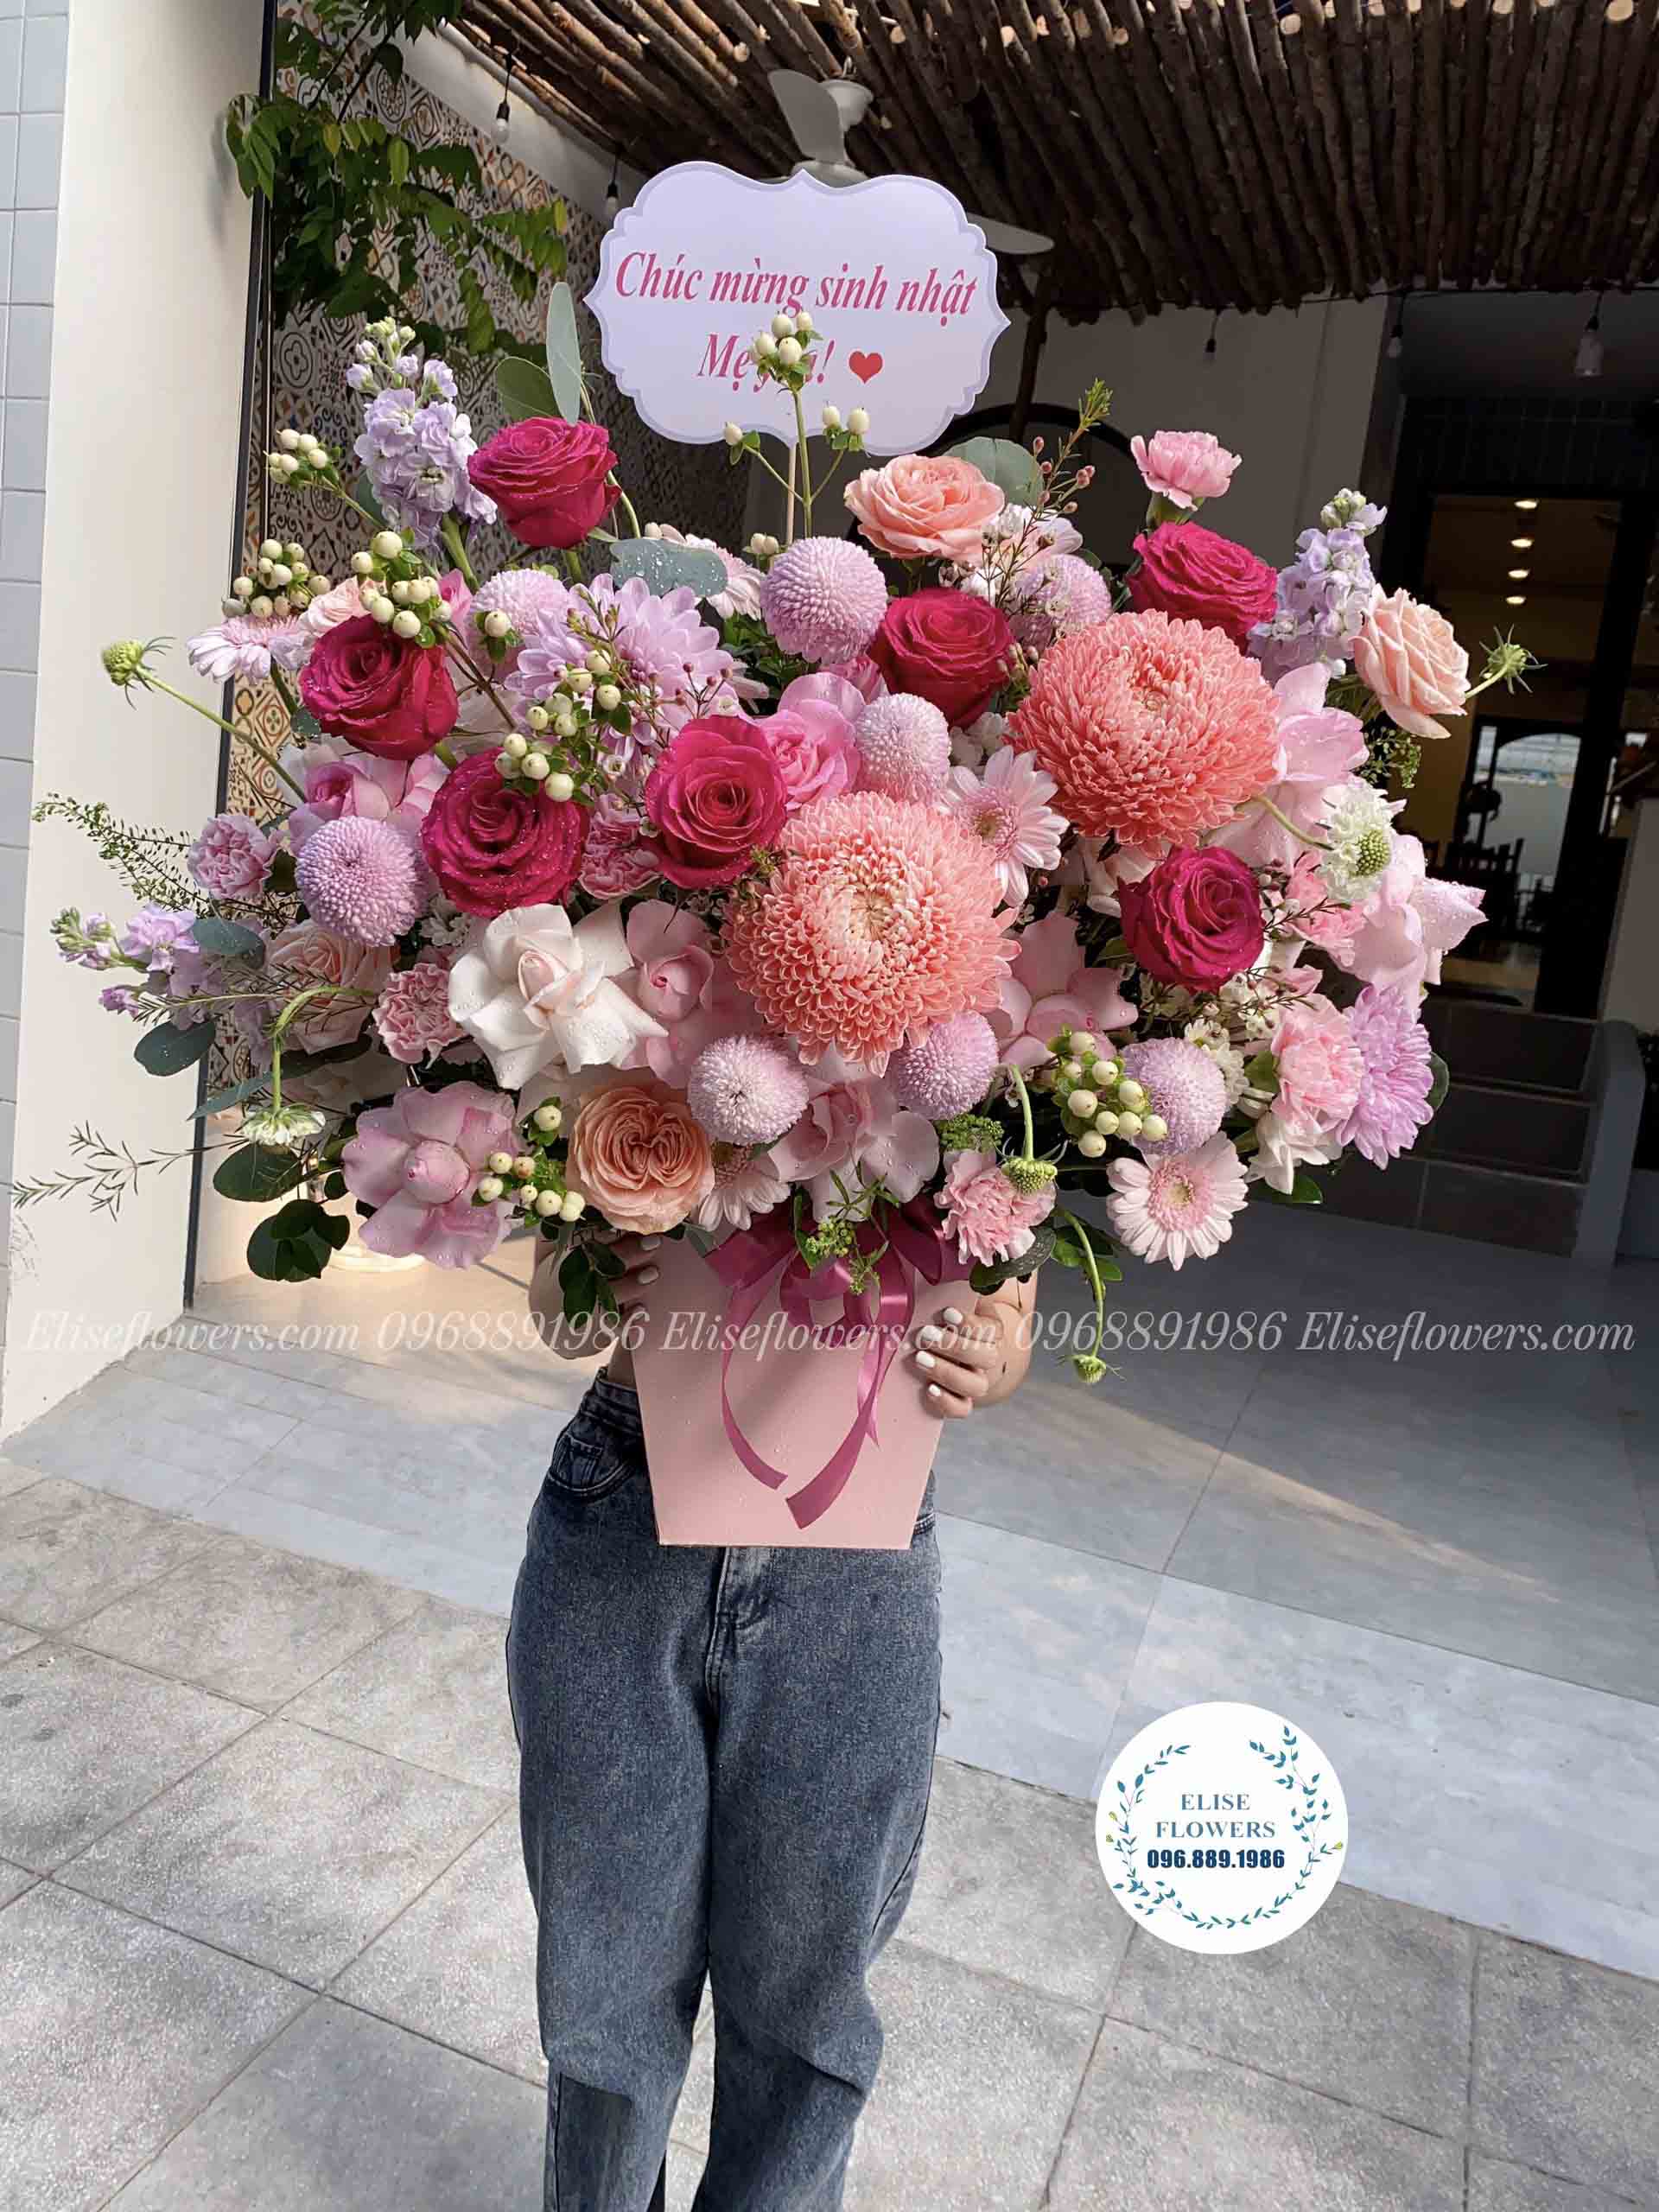 Lẵng hoa sinh nhật màu hồng cao cấp tại Eliseflowers.com